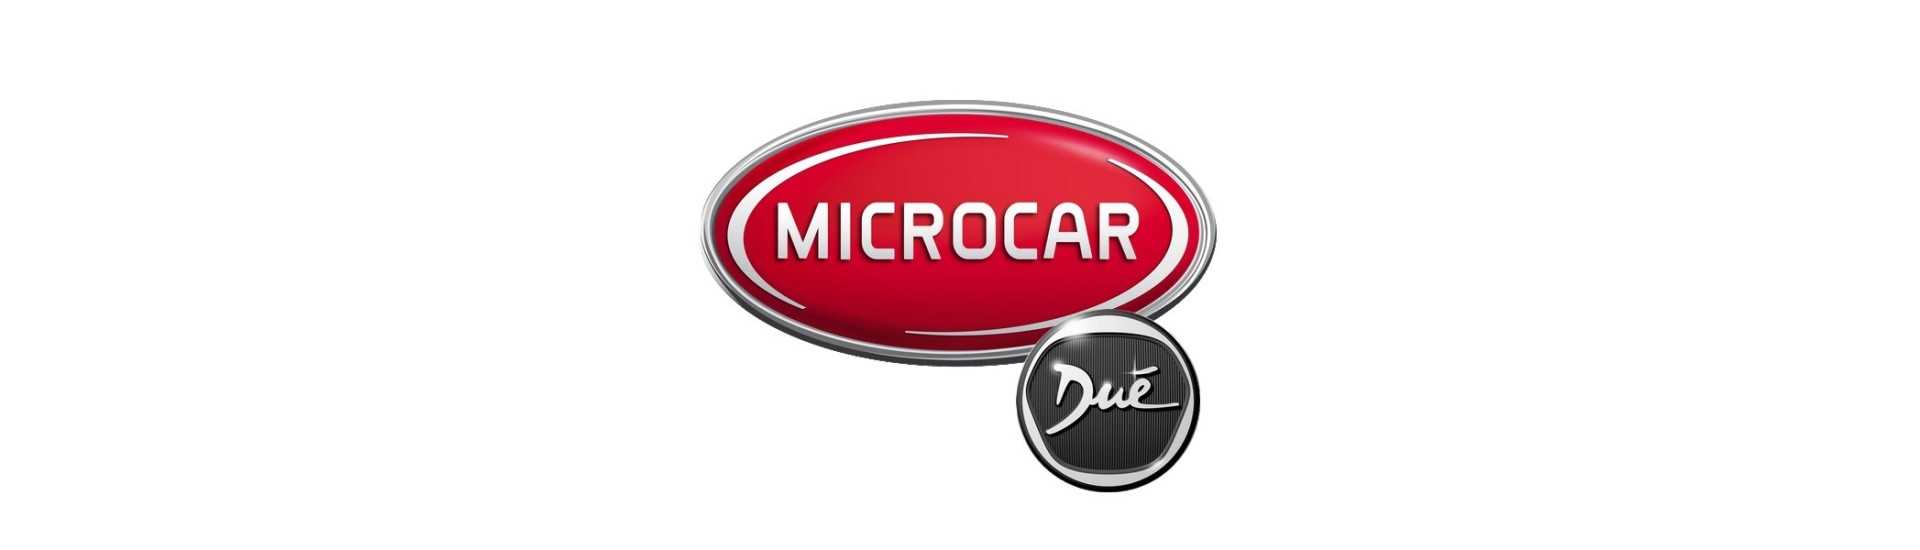 Laajennusvalikoima parhaalla hinnalla ilman lisenssiä Microcar Dué